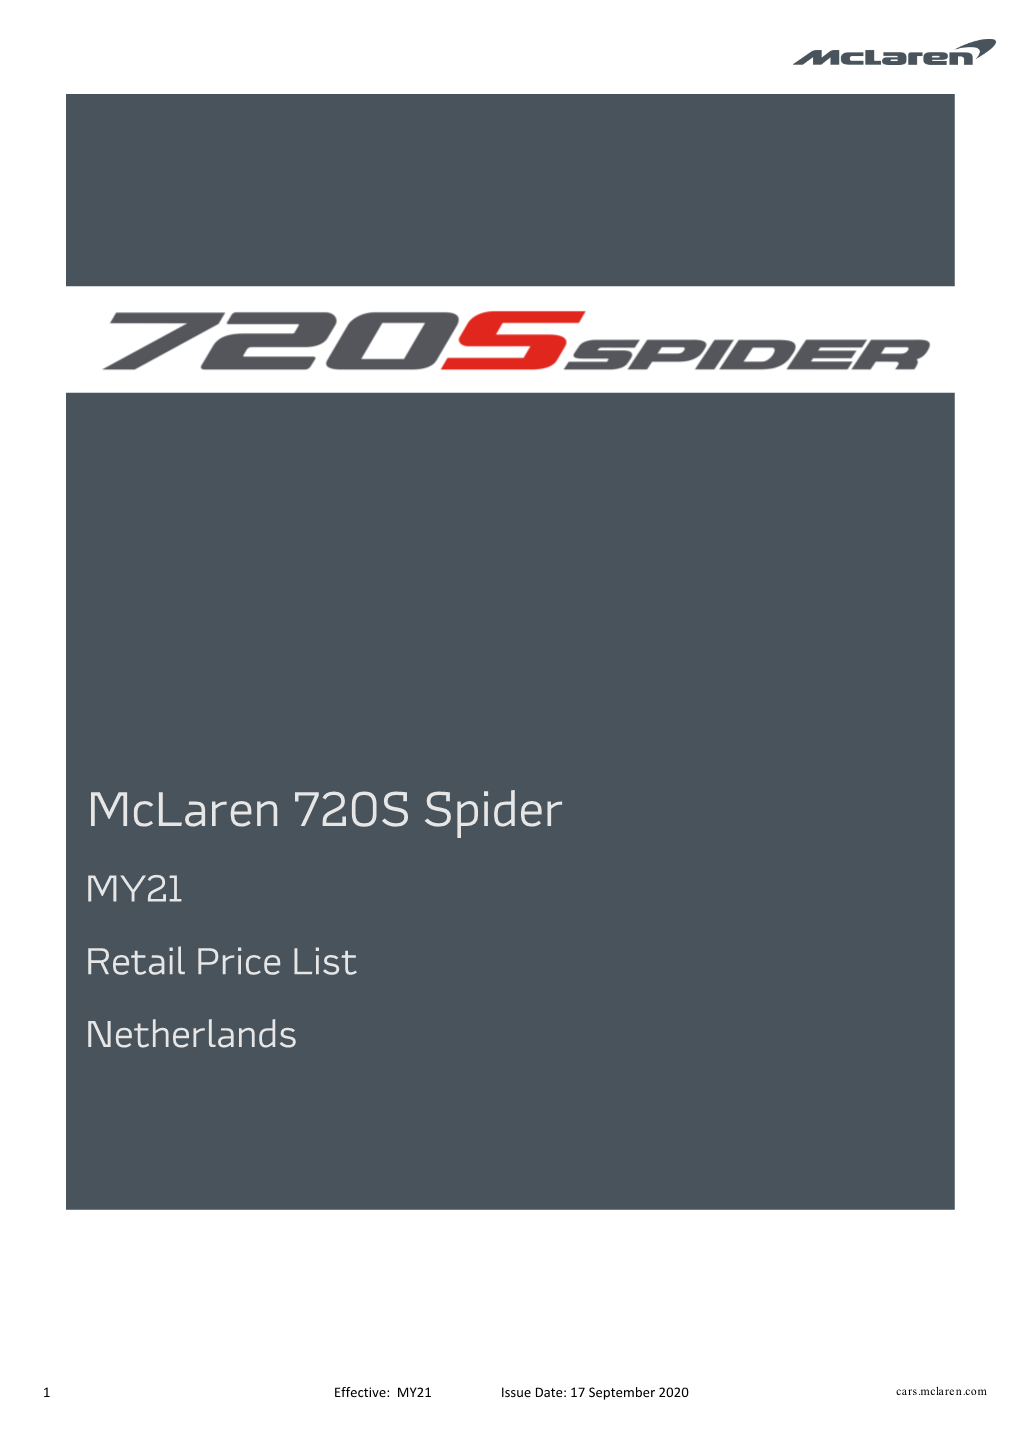 Mclaren 720S Spider MY21 Retail Price List Netherlands